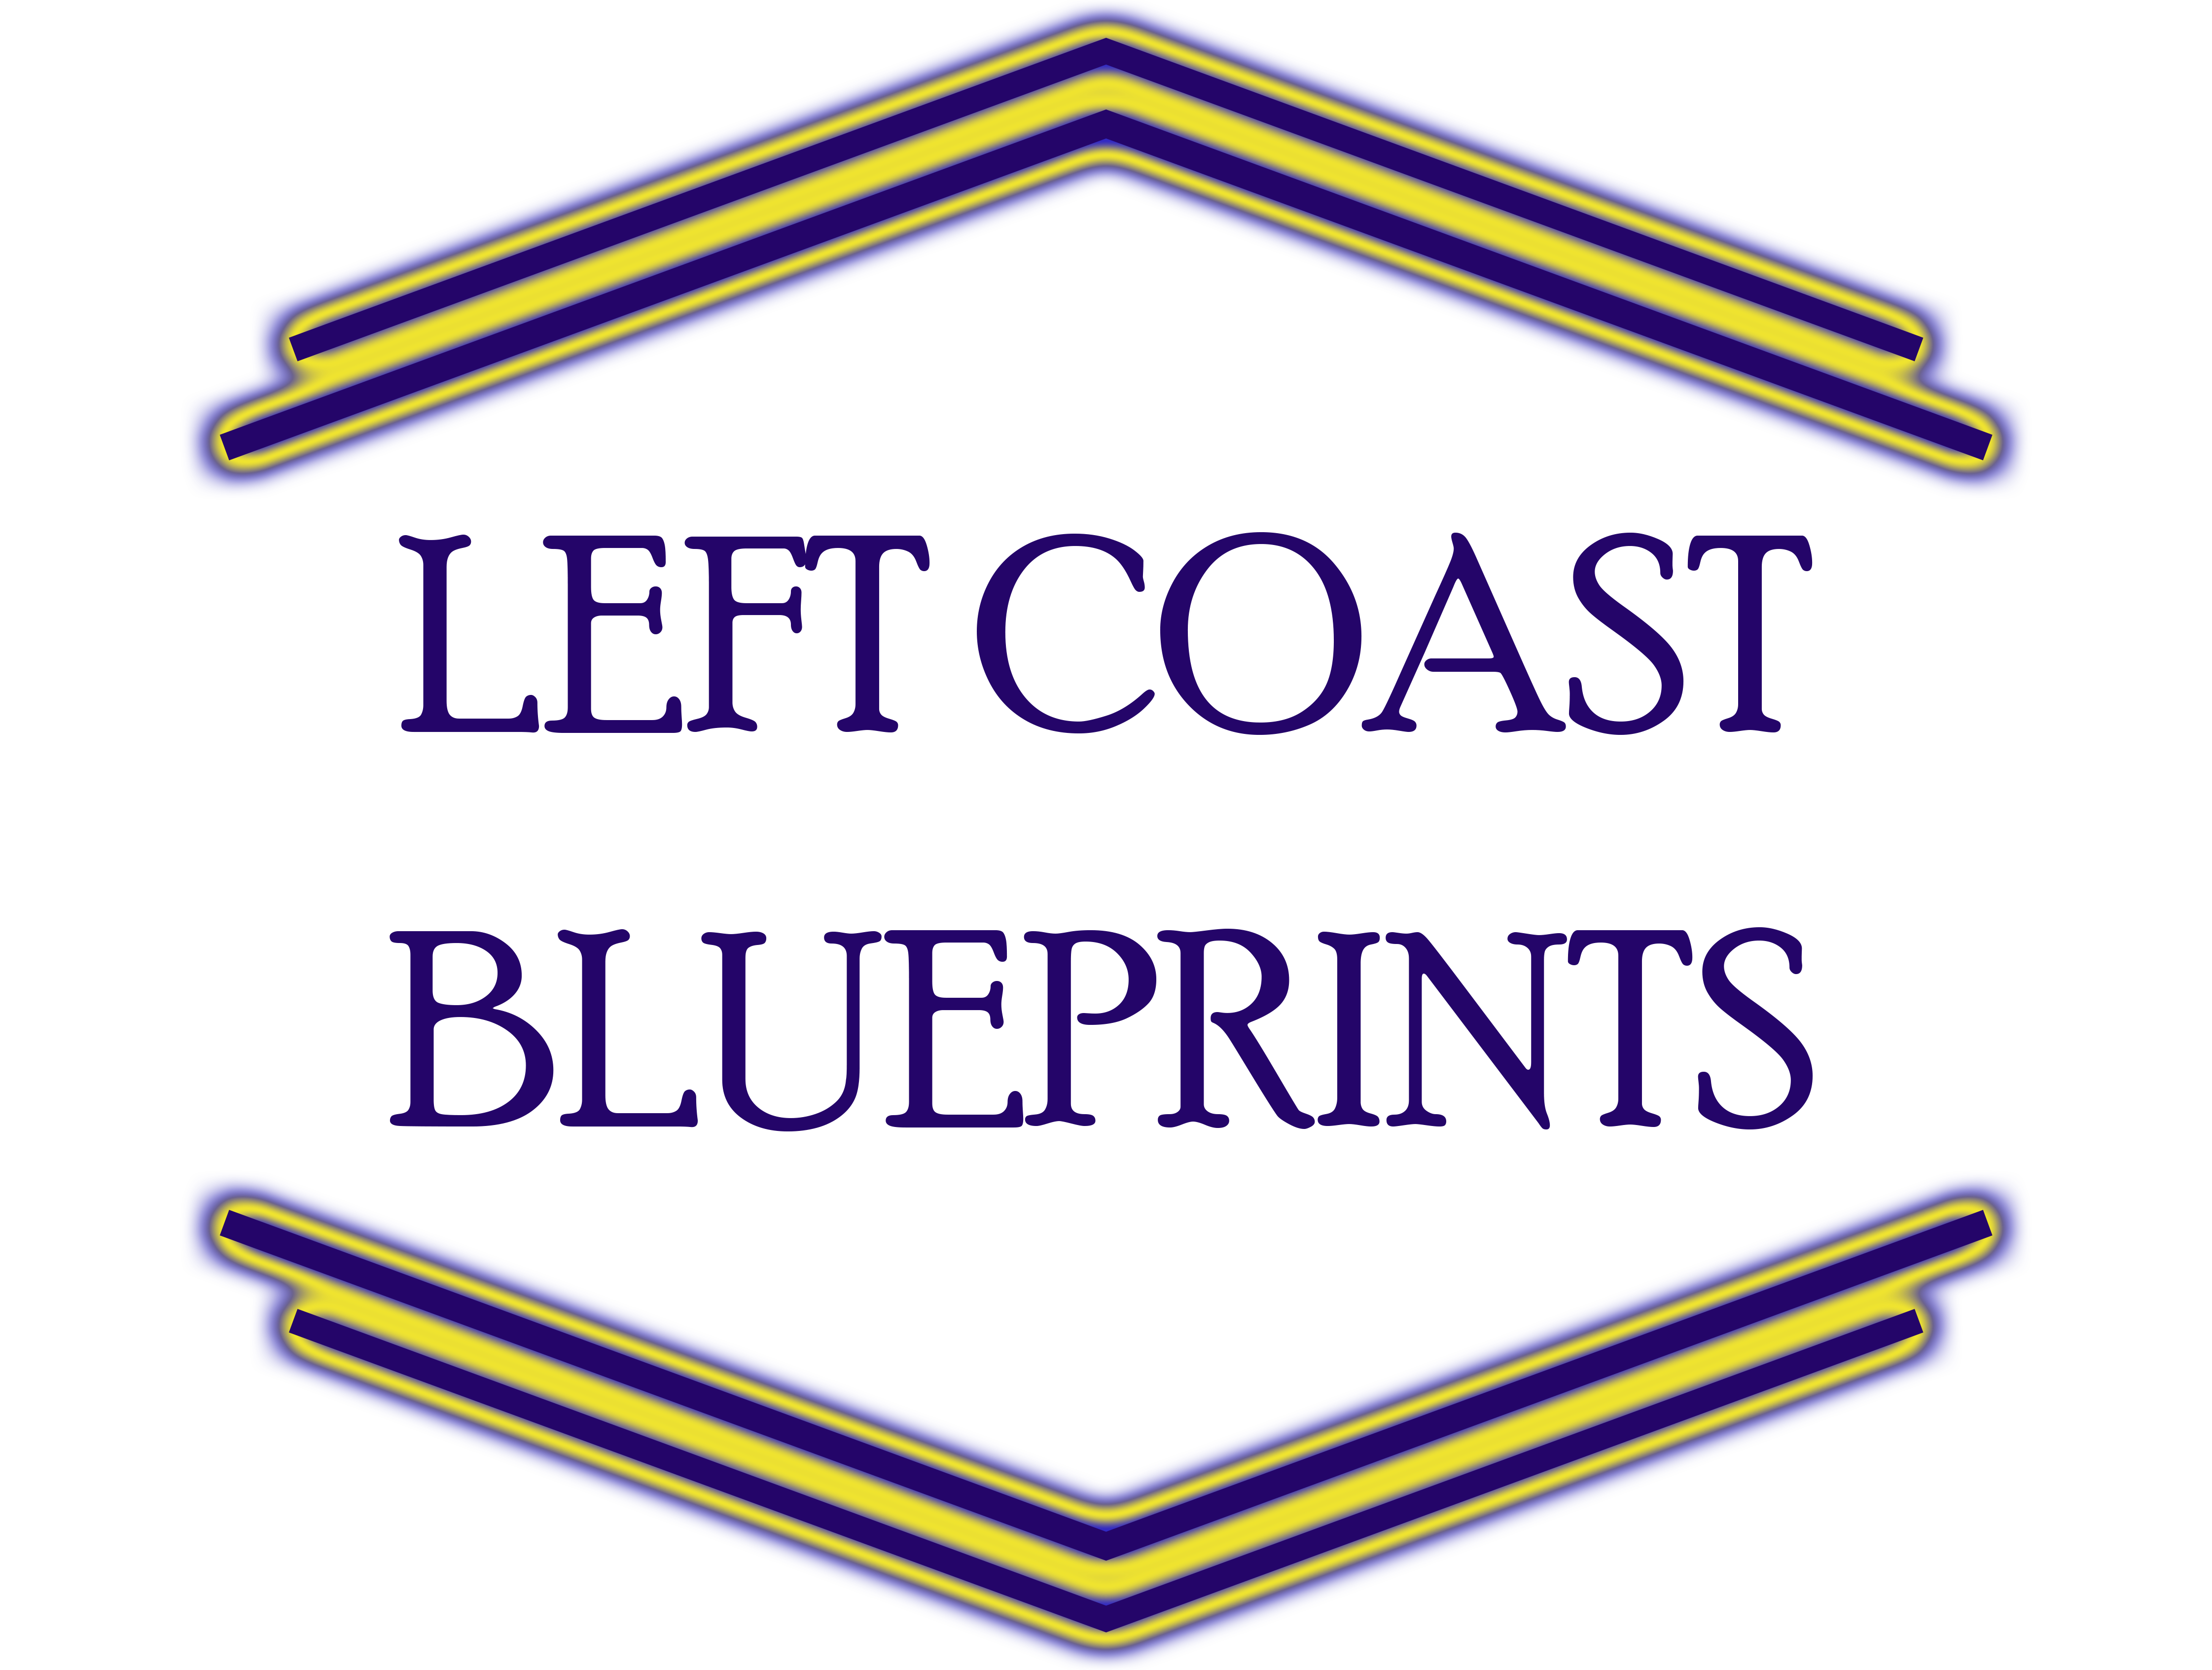 Left Coast Blueprints, LLC Logo